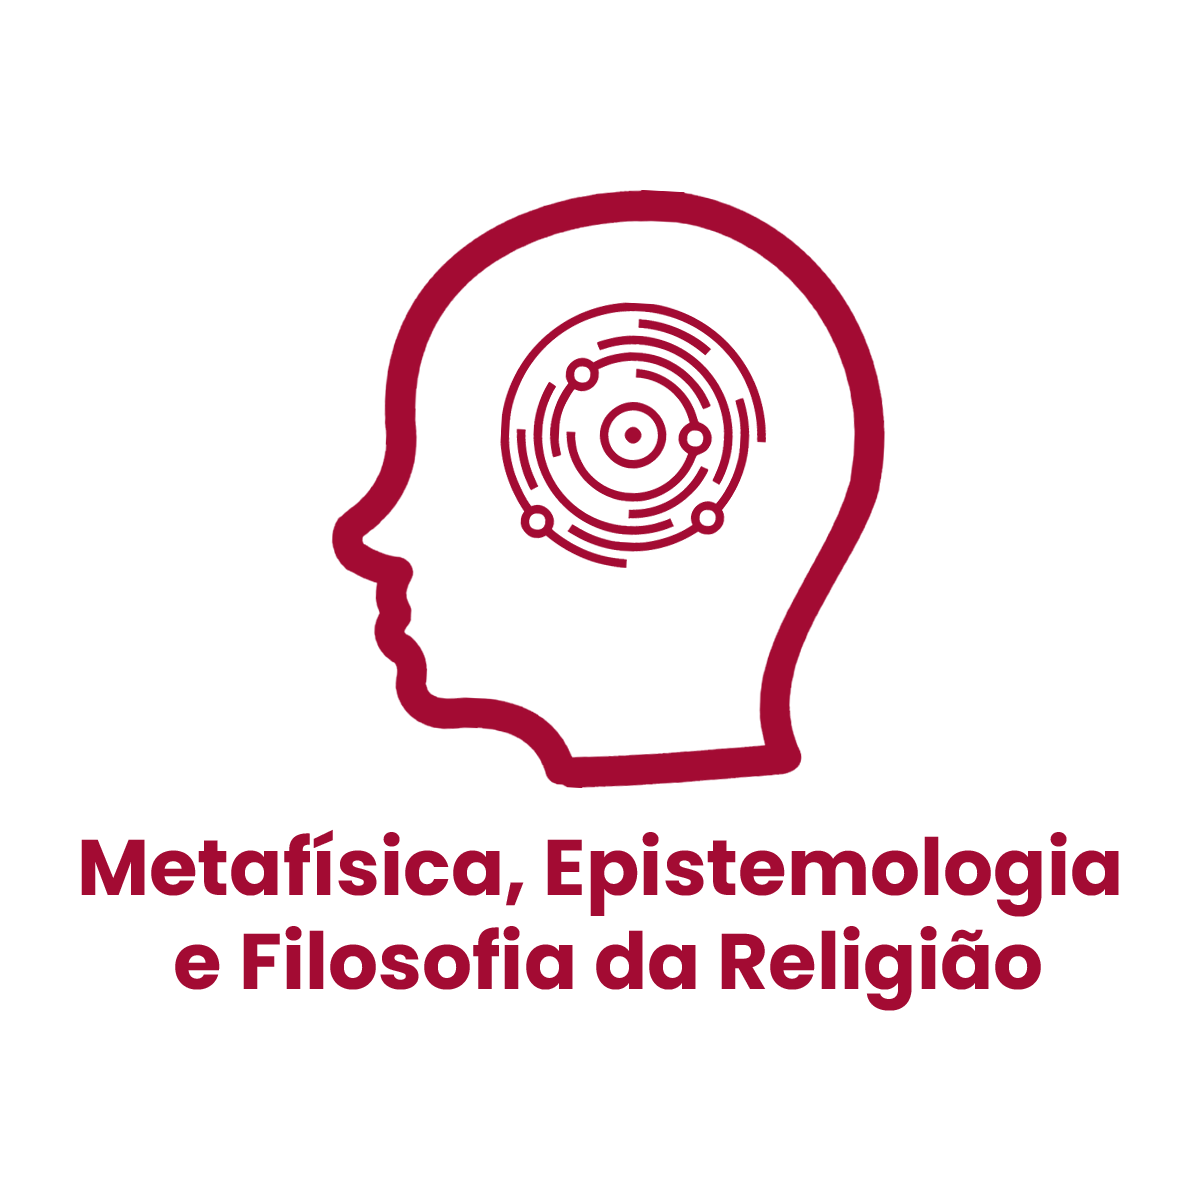 metafisica_epistemologia_e_filosofia_da_religiao